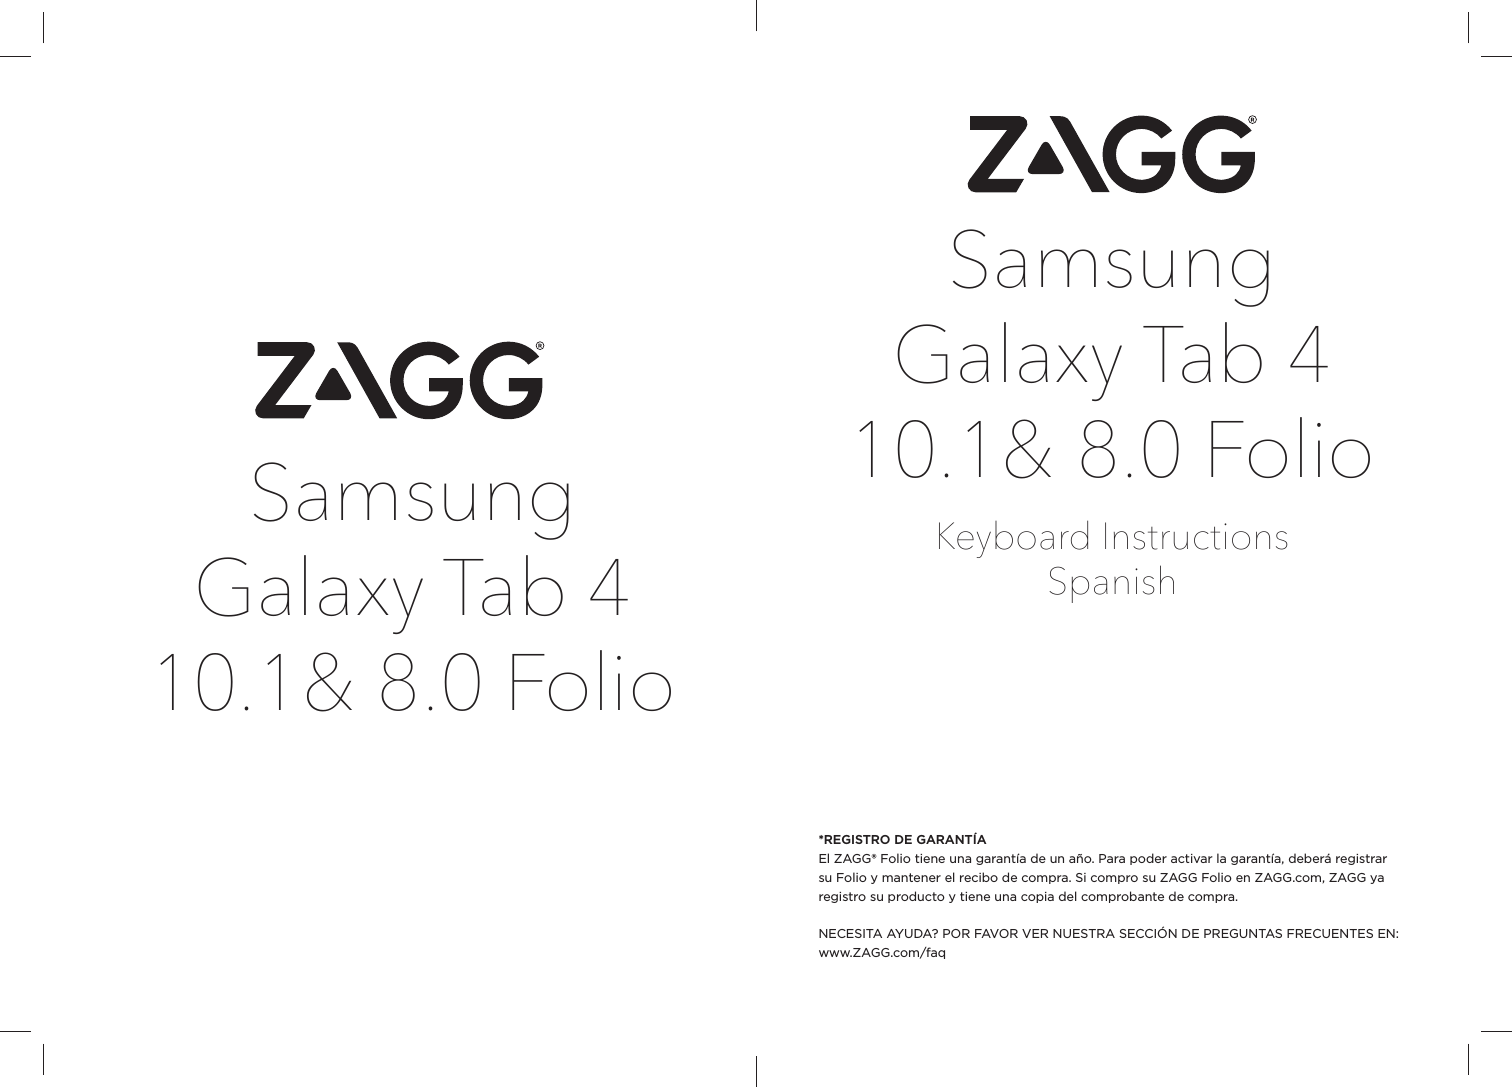 Samsung Galaxy Tab 4 10.1&amp; 8.0 FolioKeyboard InstructionsSpanish*REGISTRO DE GARANTÍAEl ZAGG® Folio tiene una garantía de un año. Para poder activar la garantía, deberá registrar su Folio y mantener el recibo de compra. Si compro su ZAGG Folio en ZAGG.com, ZAGG ya registro su producto y tiene una copia del comprobante de compra.NECESITA AYUDA? POR FAVOR VER NUESTRA SECCIÓN DE PREGUNTAS FRECUENTES EN: www.ZAGG.com/faqSamsung Galaxy Tab 4 10.1&amp; 8.0 Folio